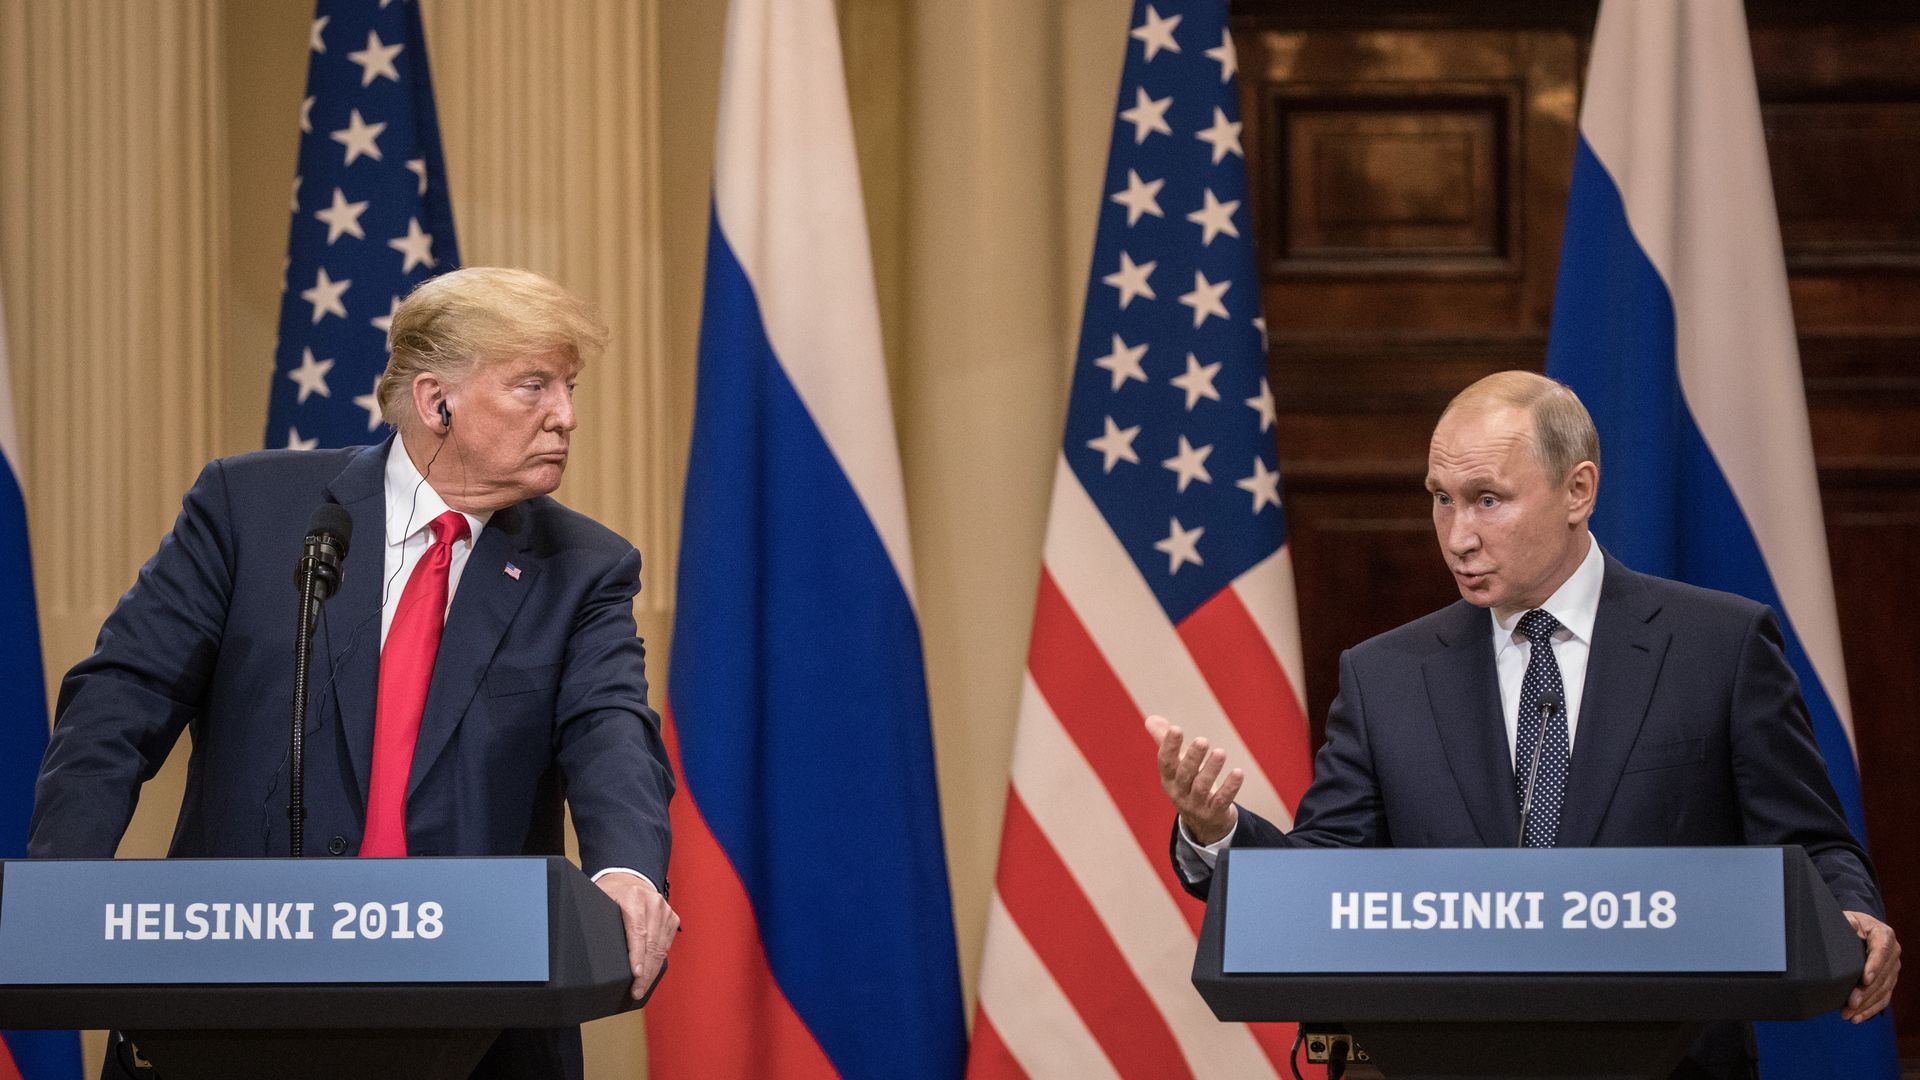 Trump and Putin at Helsinki summit